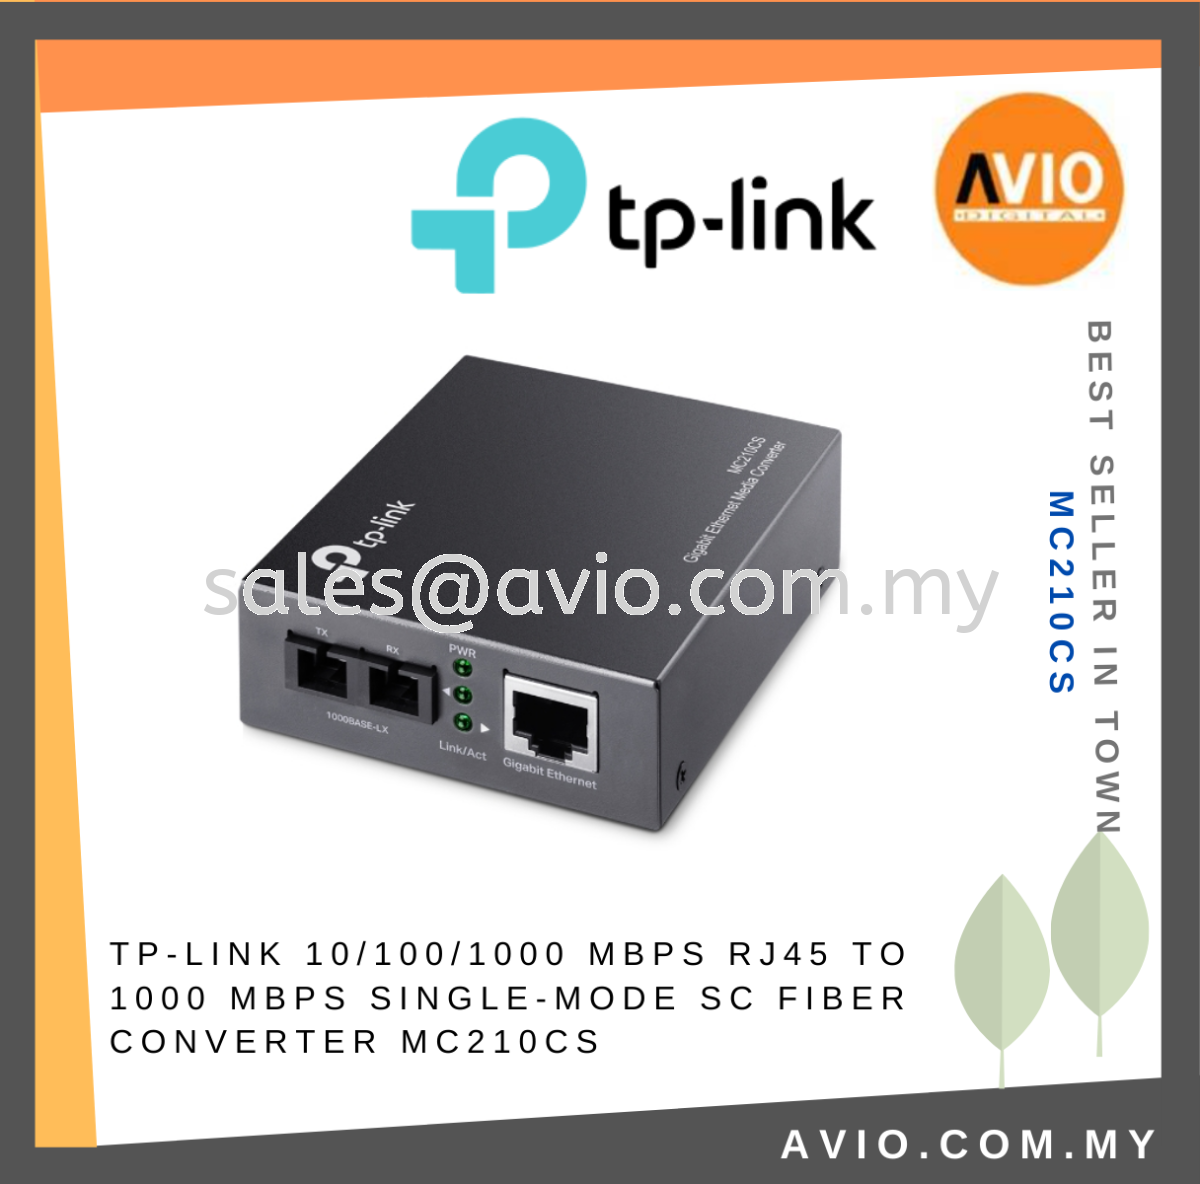 TP-LINK Tplink Gigabit 10/100/1000Mbps Single Mode Media Converter RJ45 Ethernet  LAN Port to